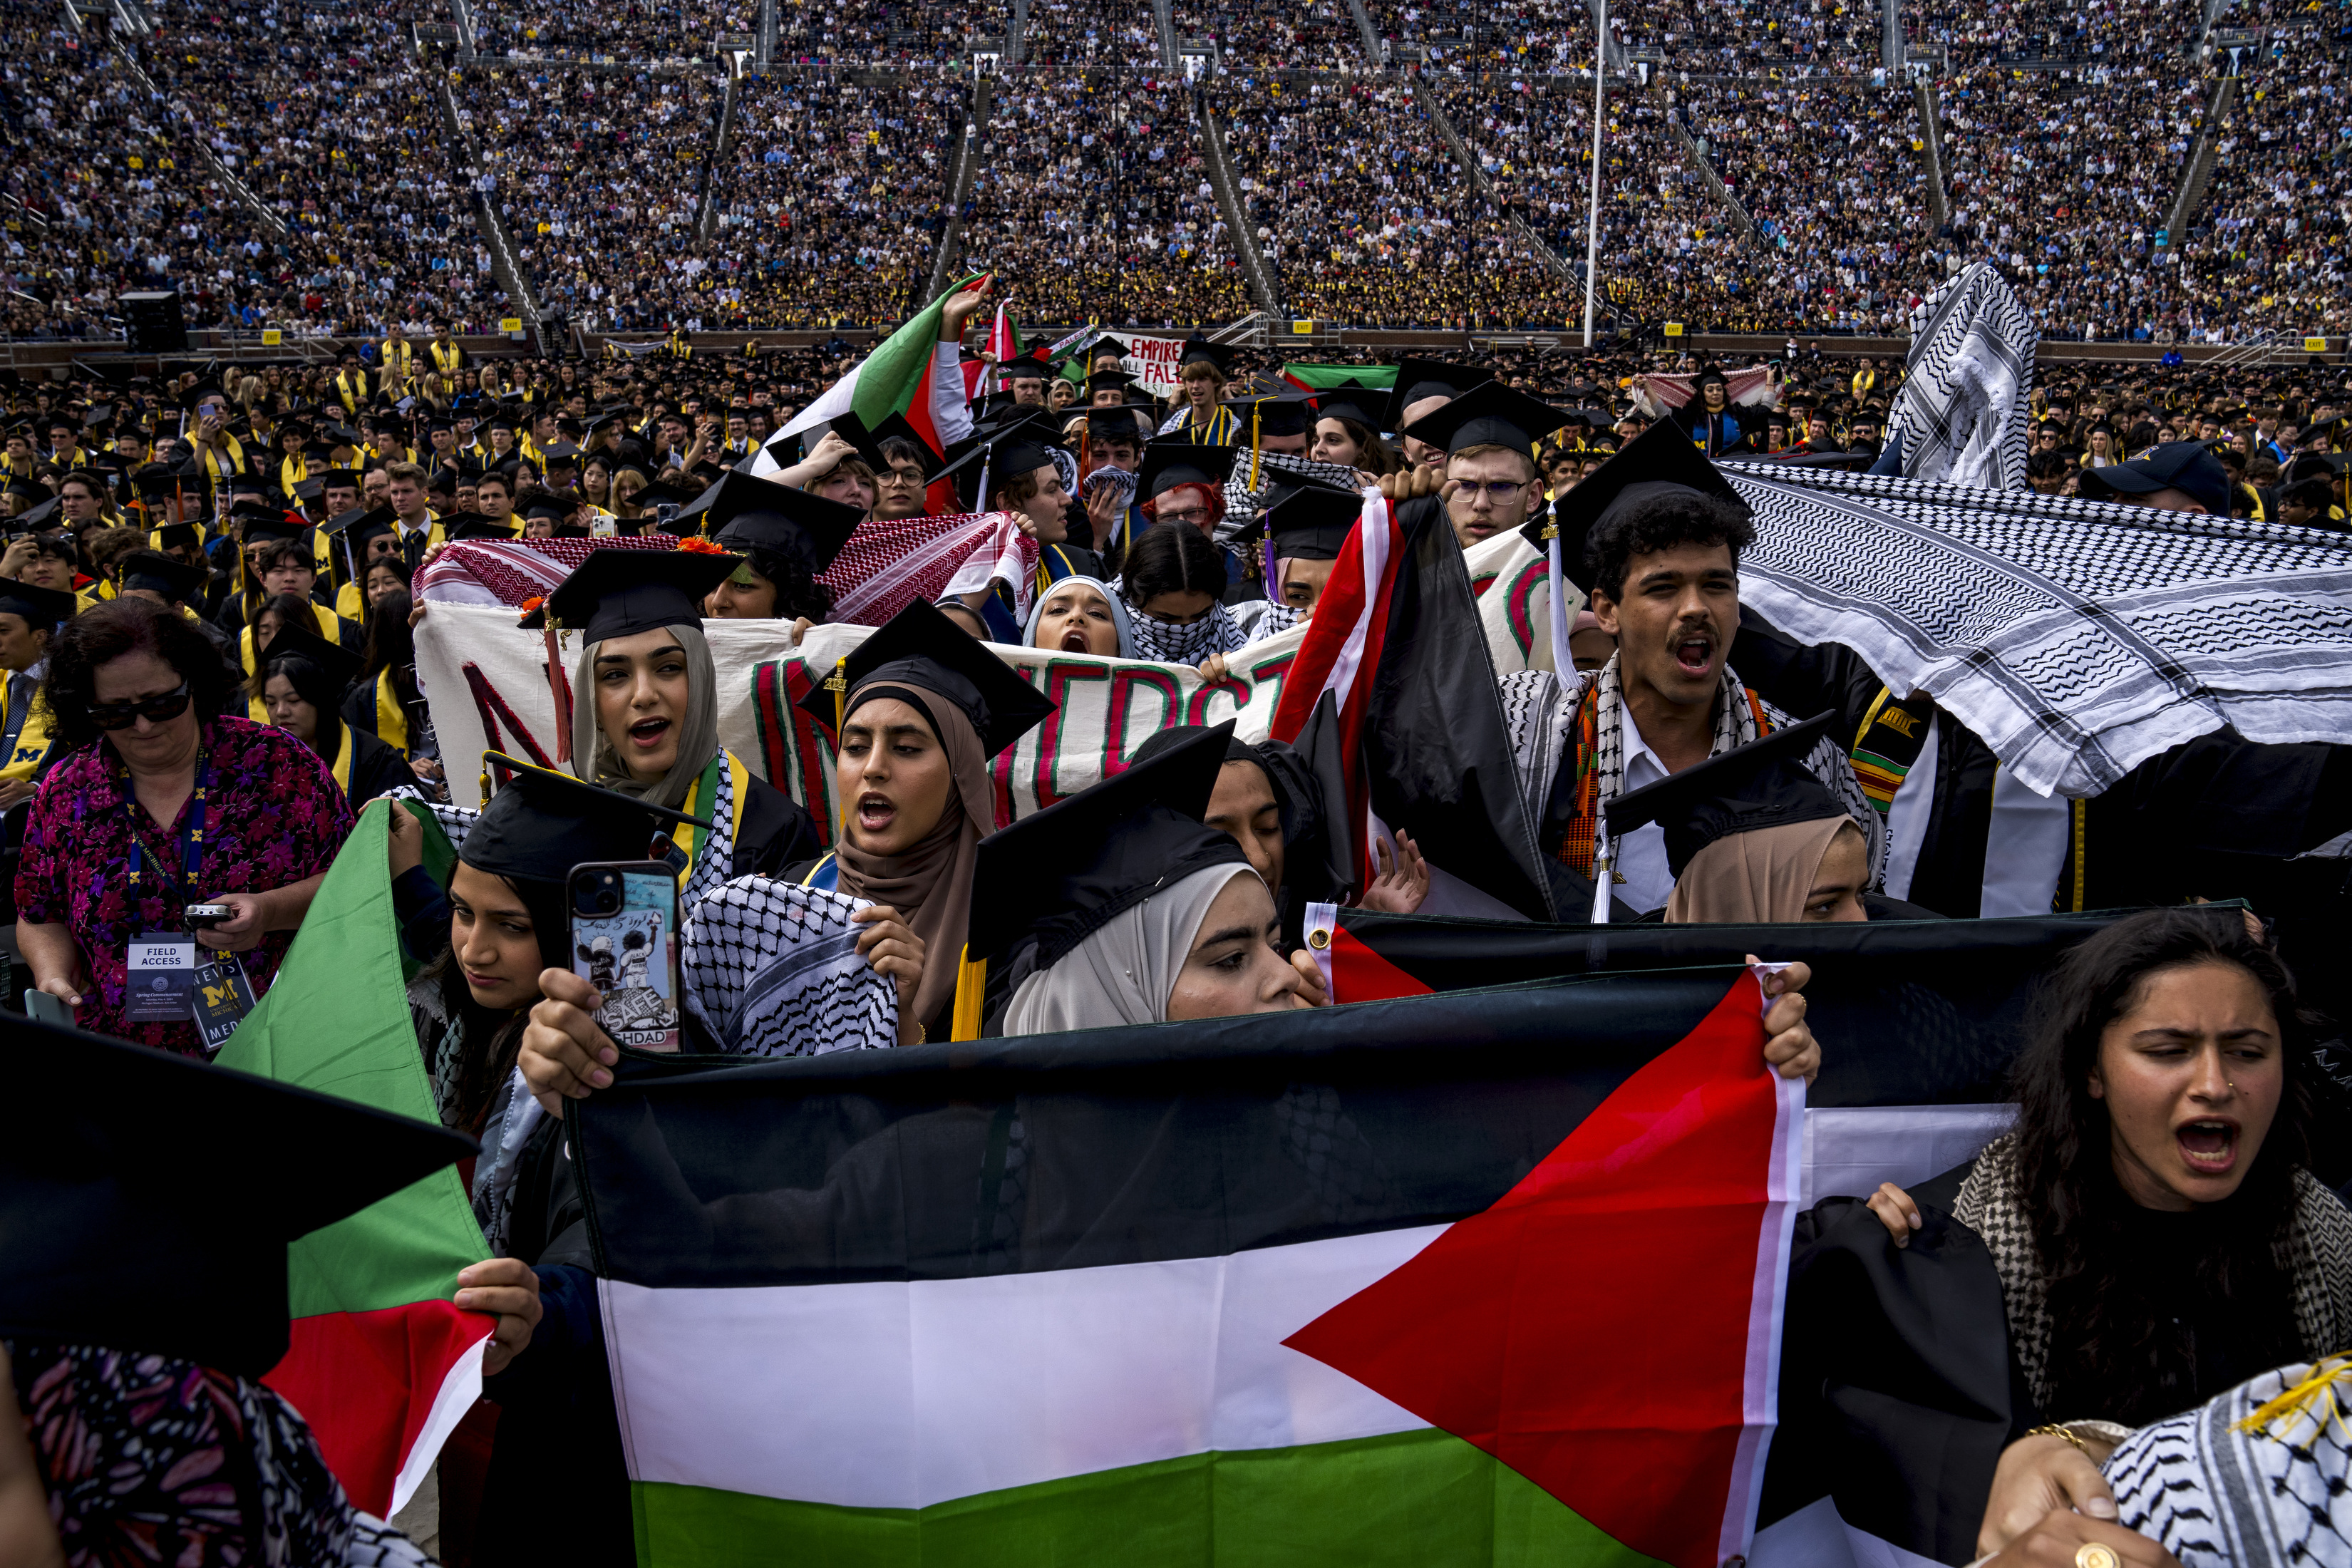 Des acclamations éclatent alors que les manifestants pro-palestiniens sont exclus de la remise des diplômes au Michigan